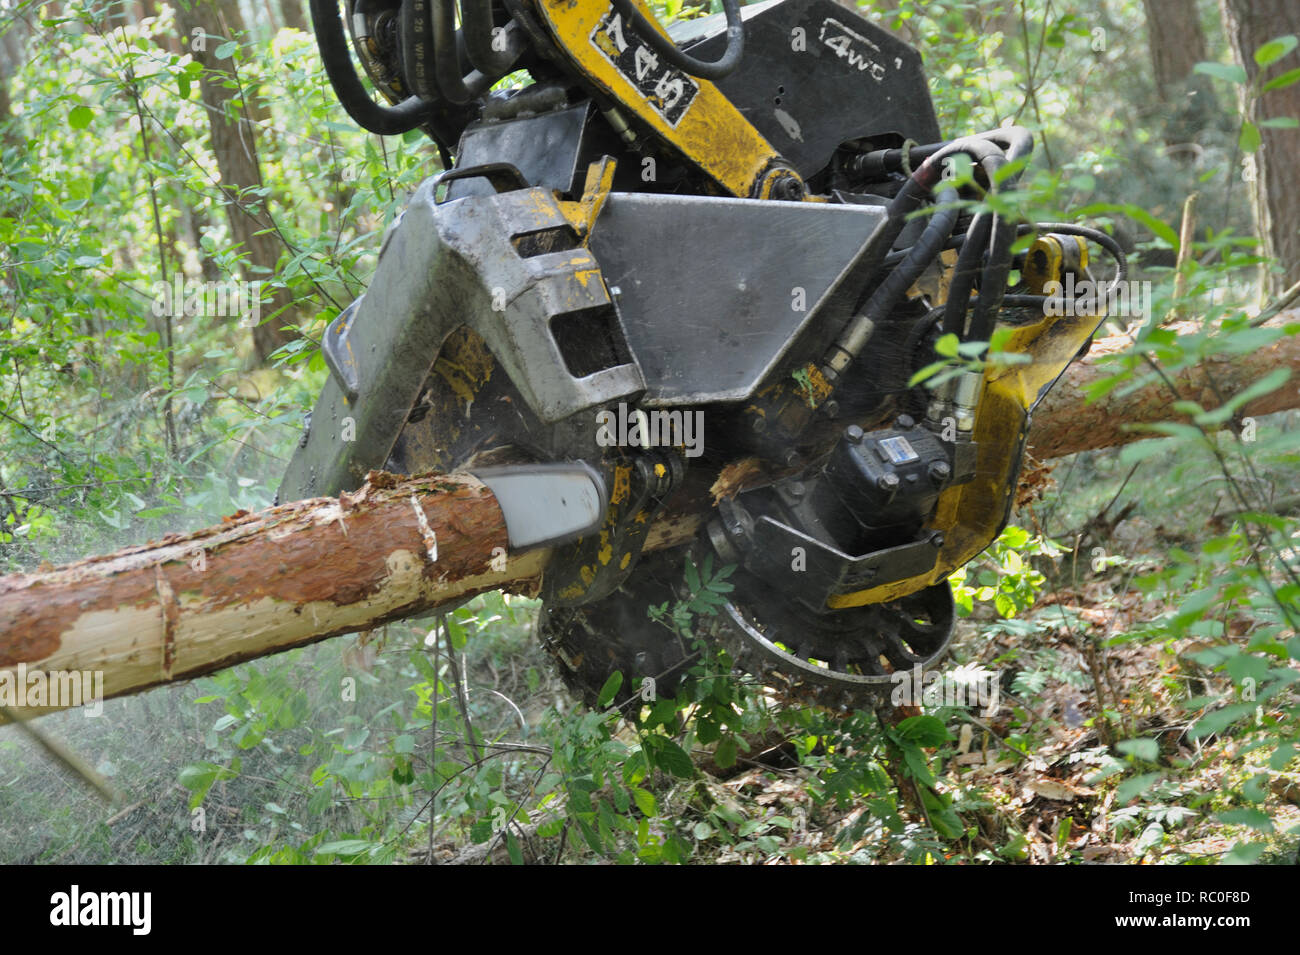 Holzerntemaschine, Harvester, fällt und zerlegt Bäume in einem Arbeitsgang  | harvesterr cutting down trees in the wood Stock Photo - Alamy